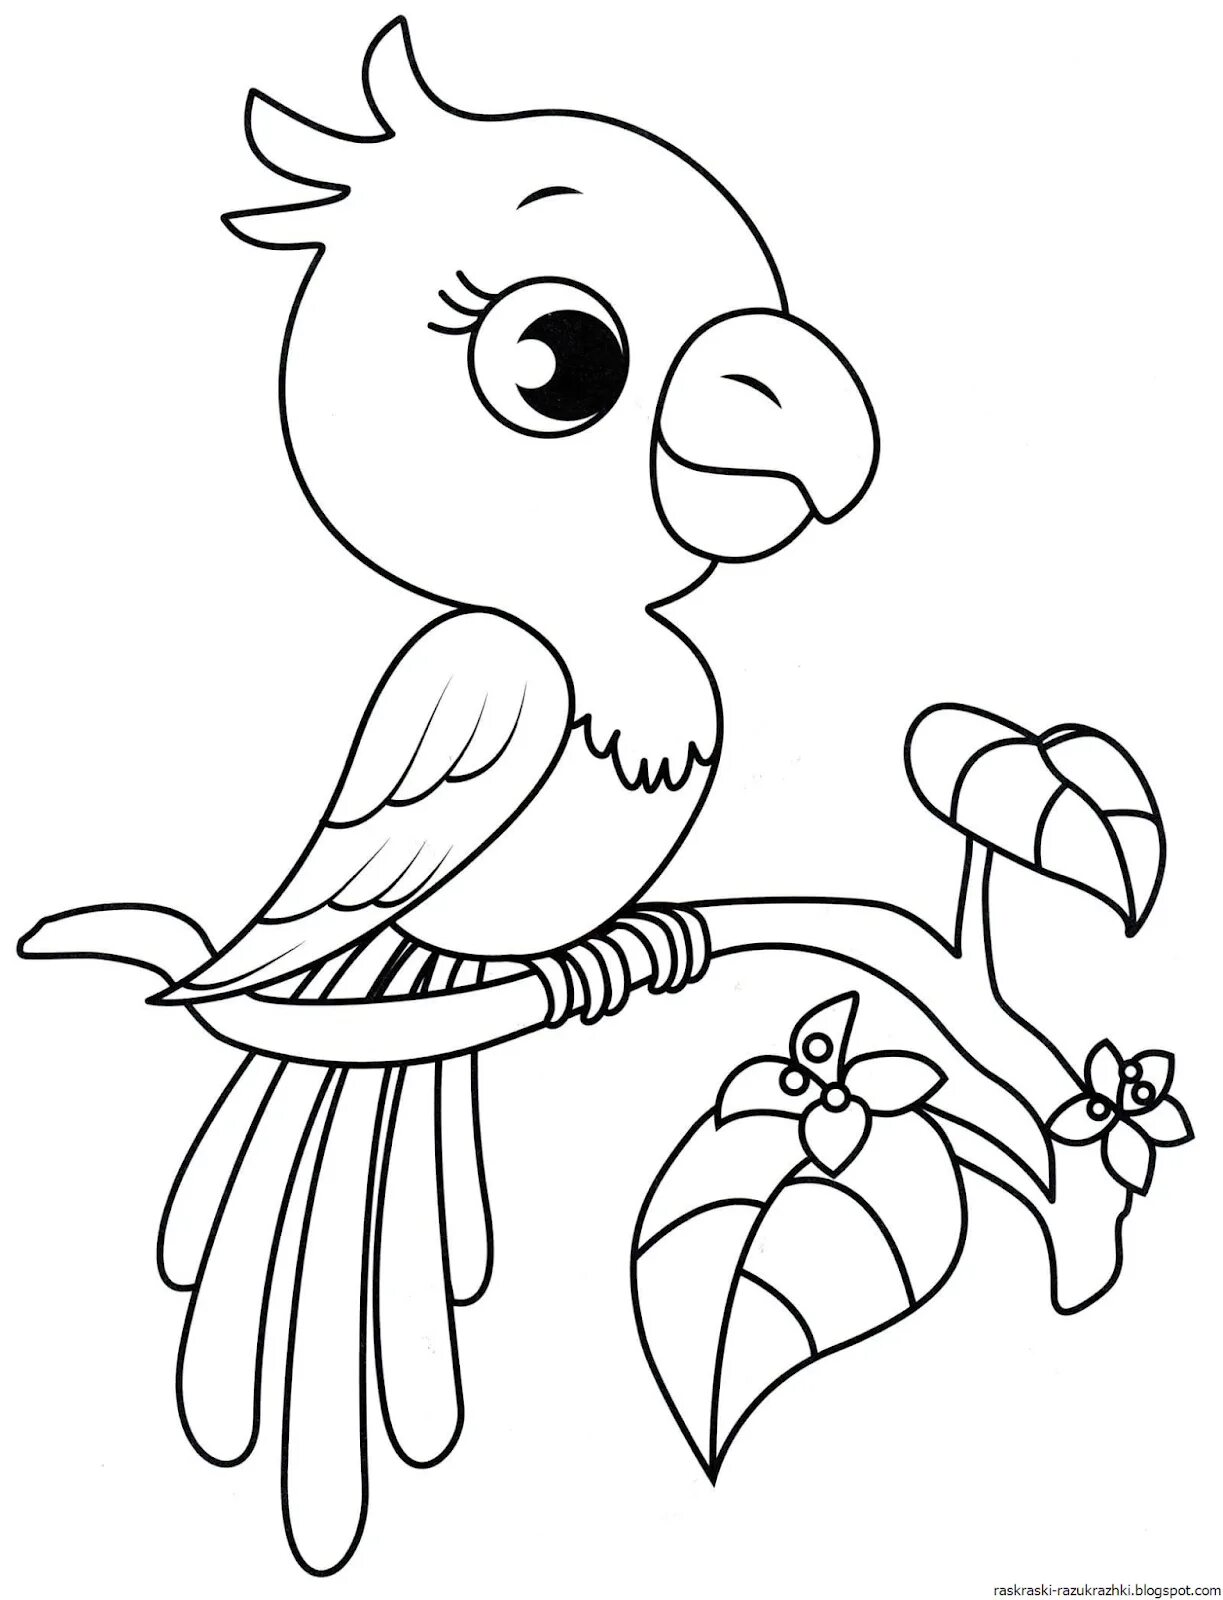 Птица раскраска для детей 7 лет. Раскраска попугай. Птичка раскраска. Птицы. Раскраска. Птичка раскраска для детей.